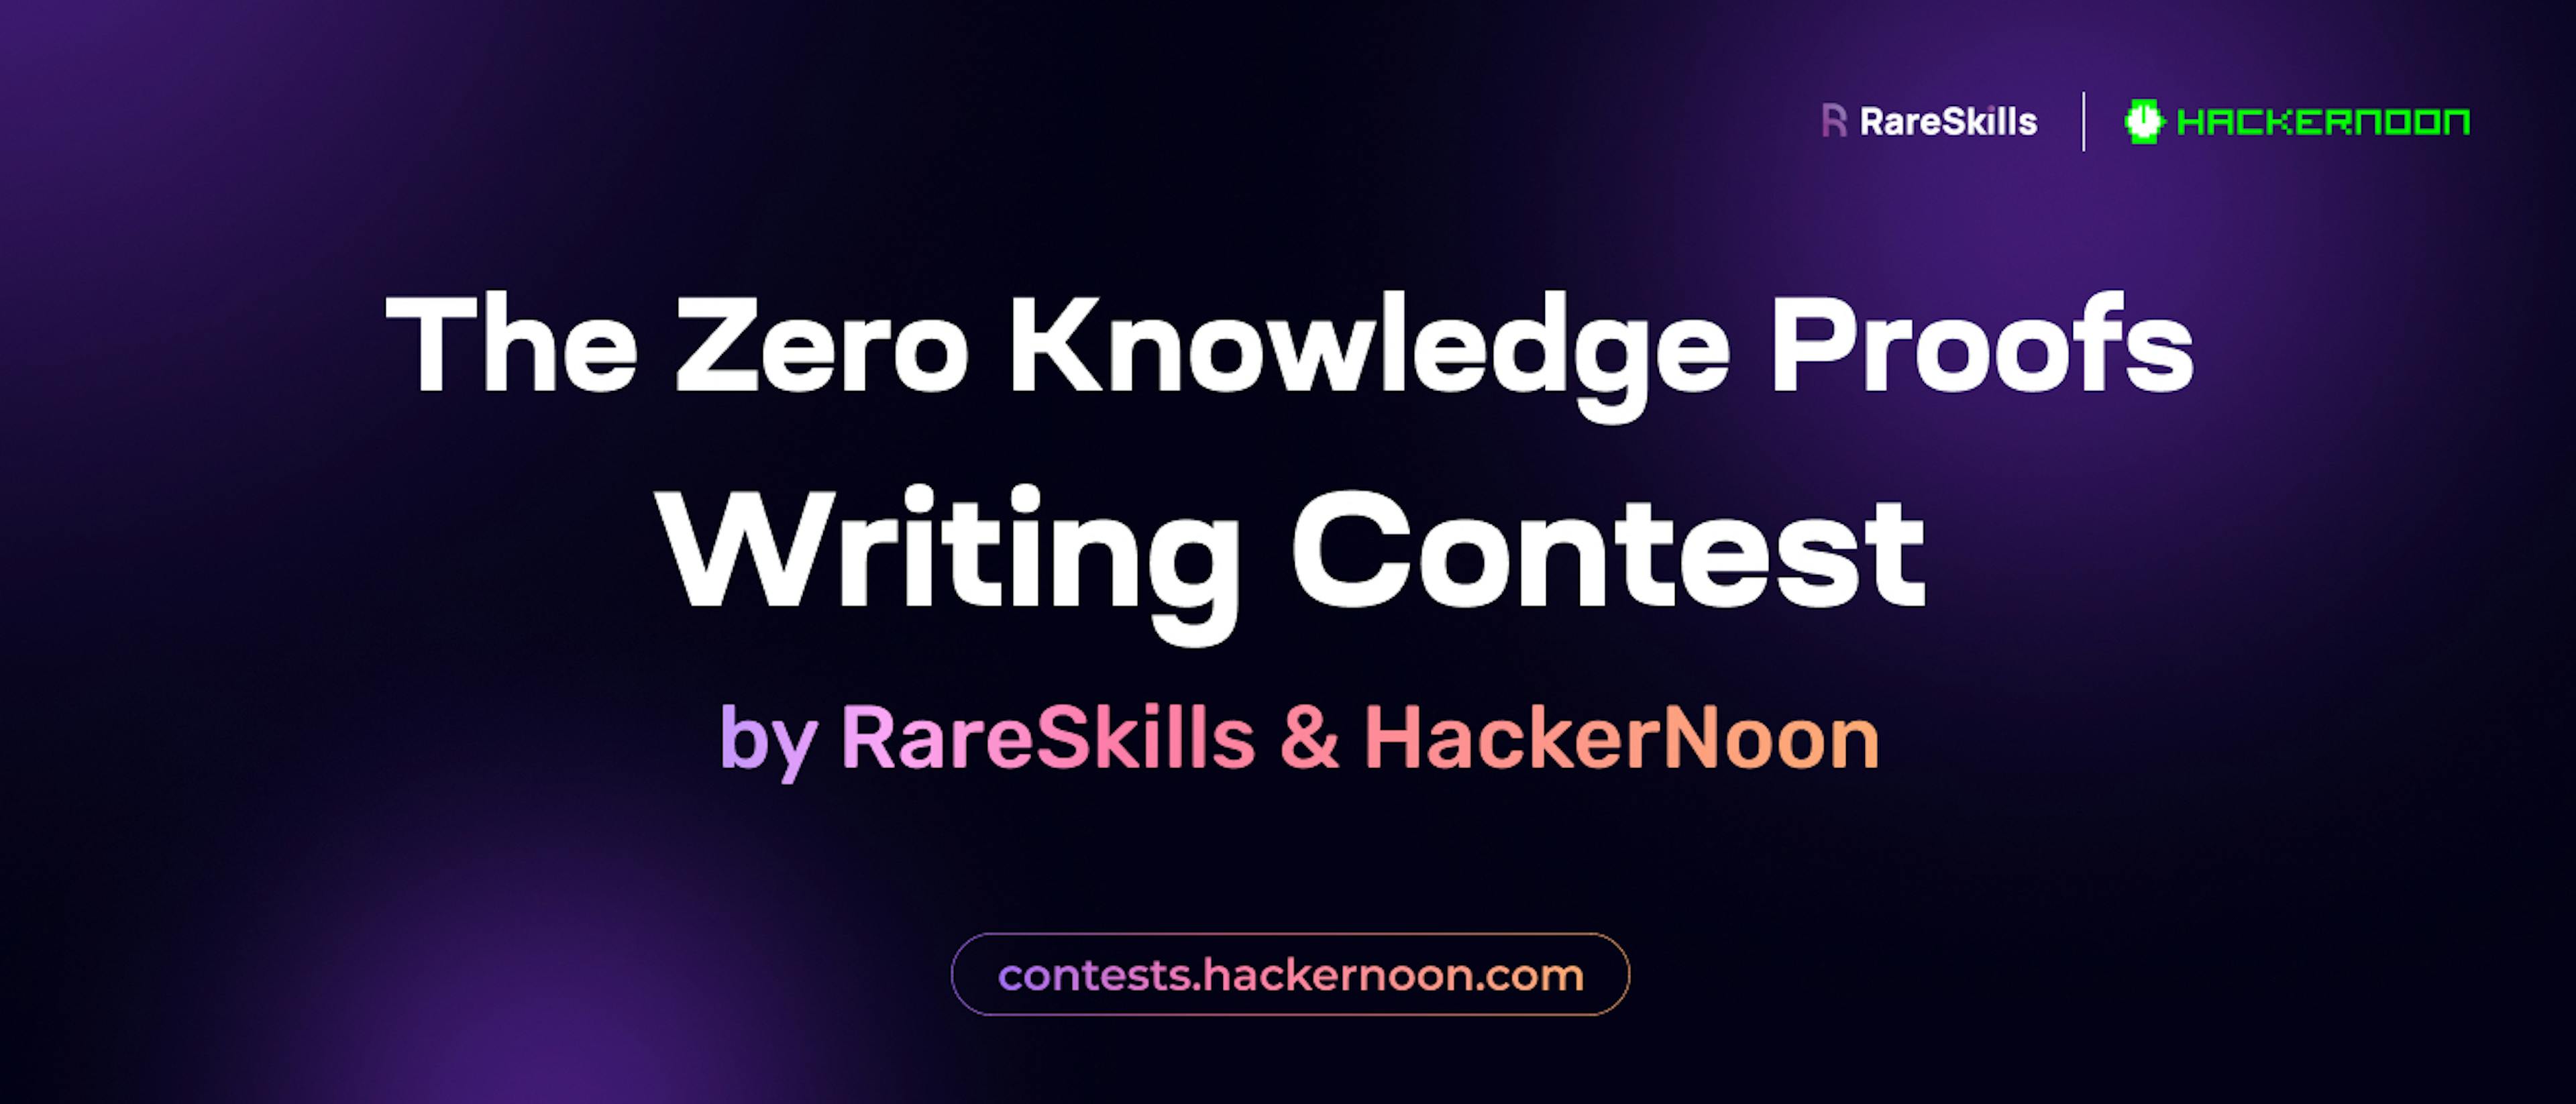 featured image - Le concours de rédaction d'épreuves Zero Knowledge par RareSkills